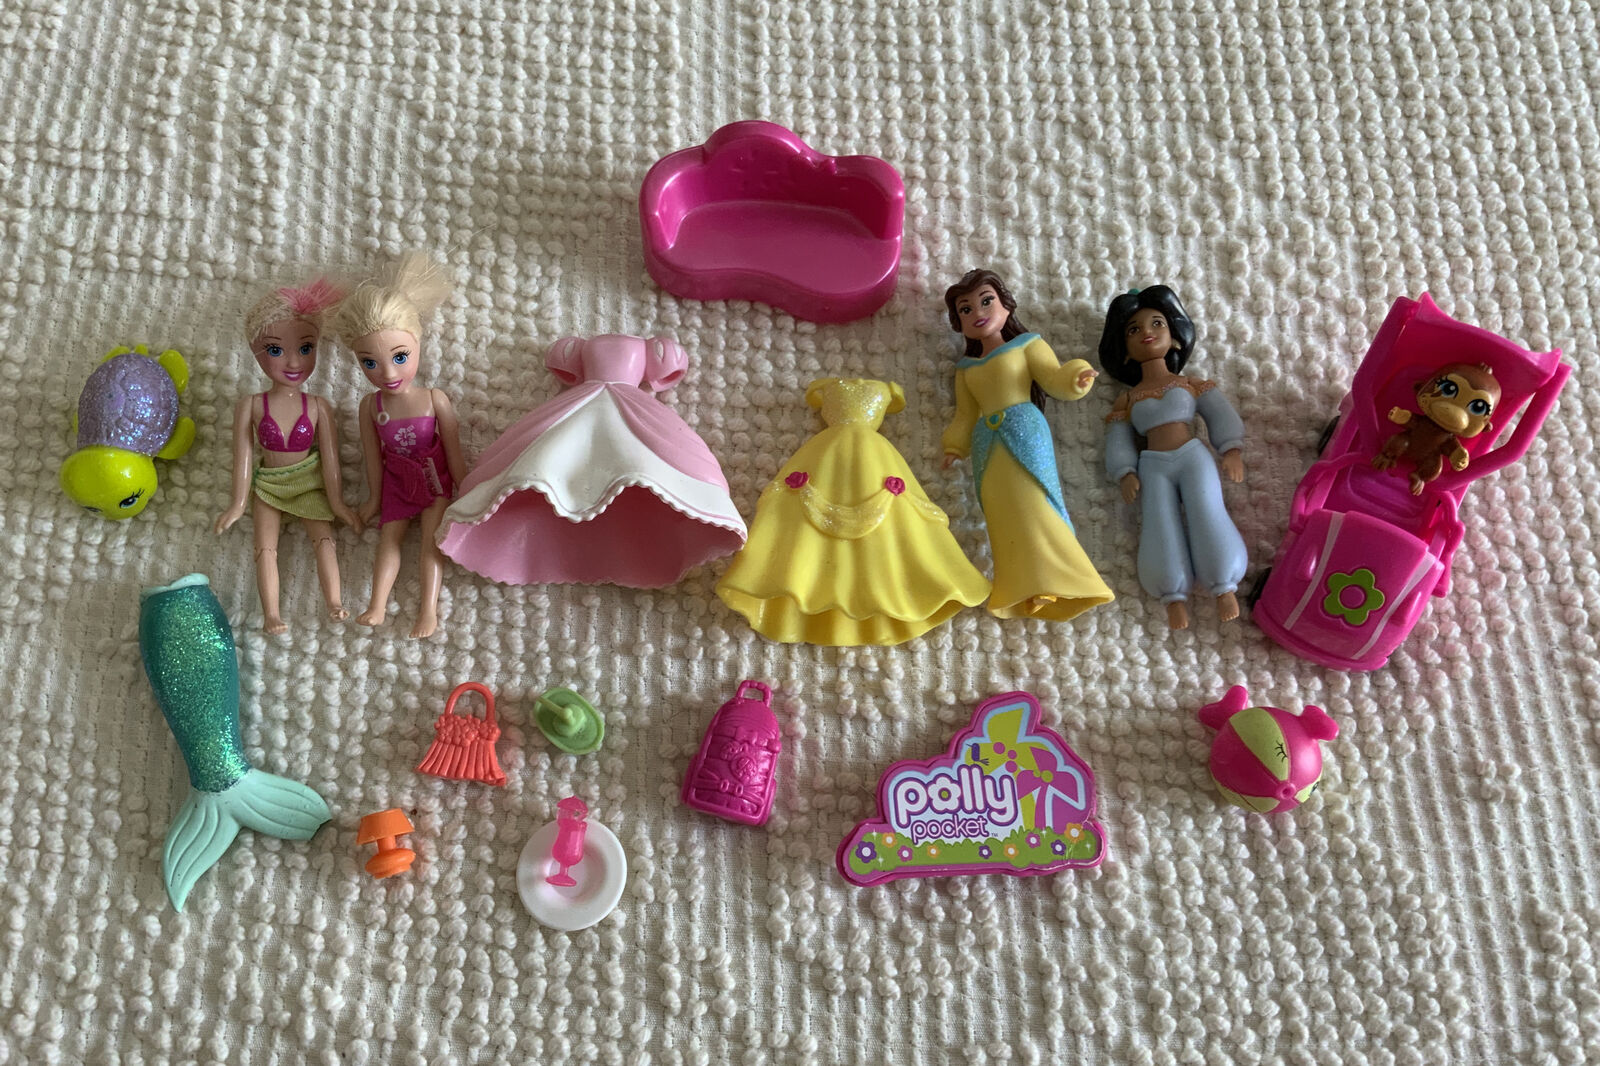 Polly Pocket Lot Mattel Disney Princess Dolls Clothes Rubber Mixed Lot Car